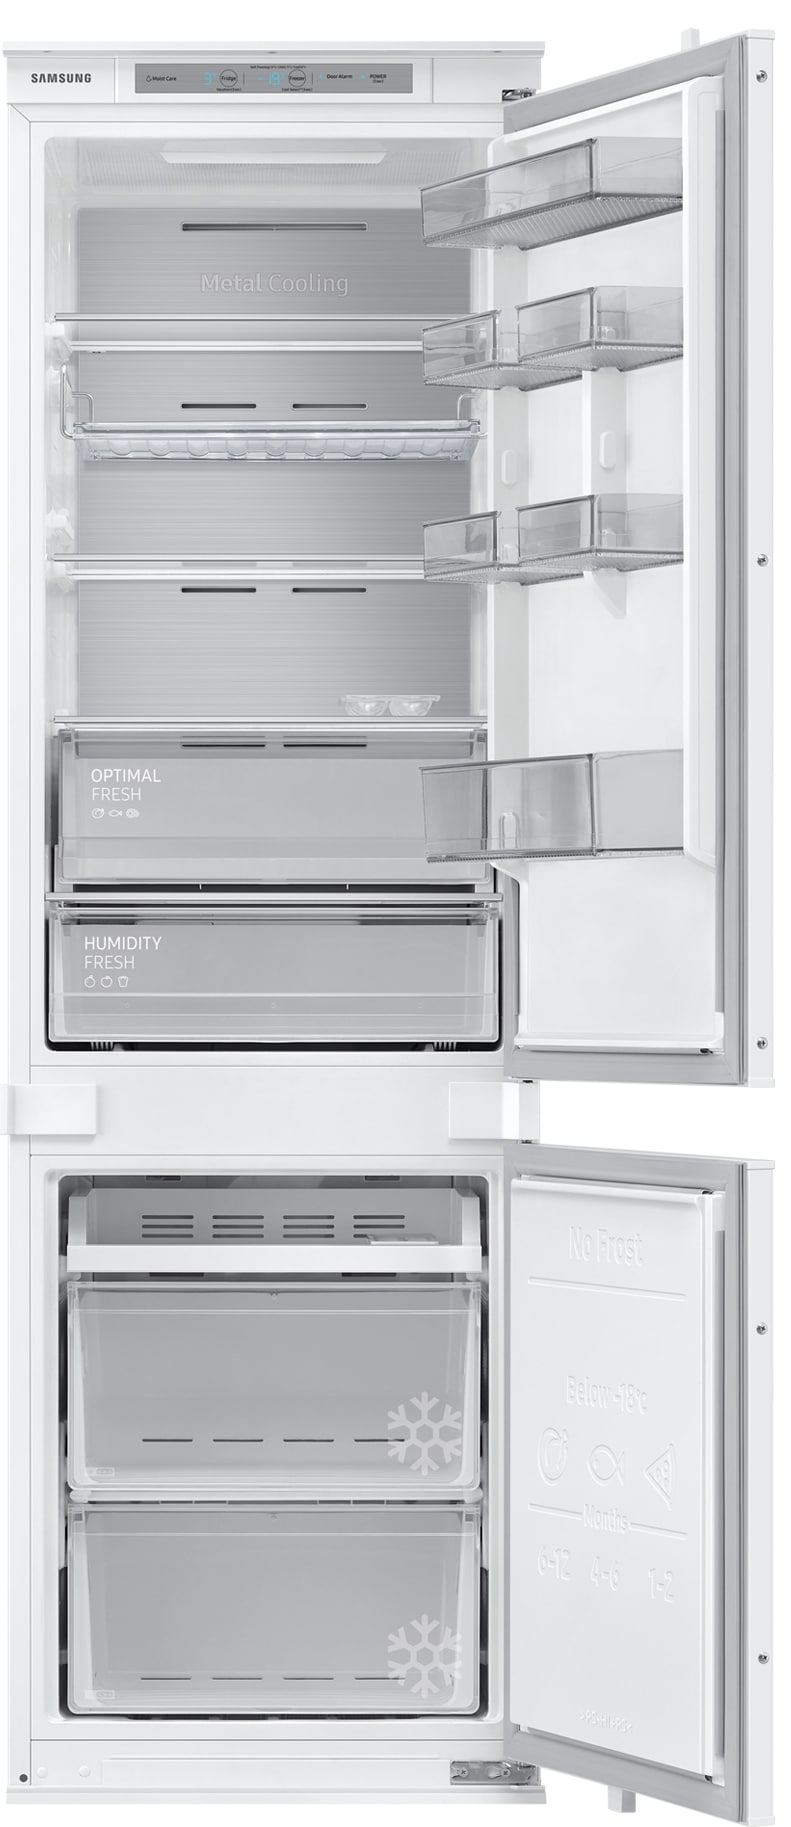 Bedste Samsung Integreret køleskab i 2023